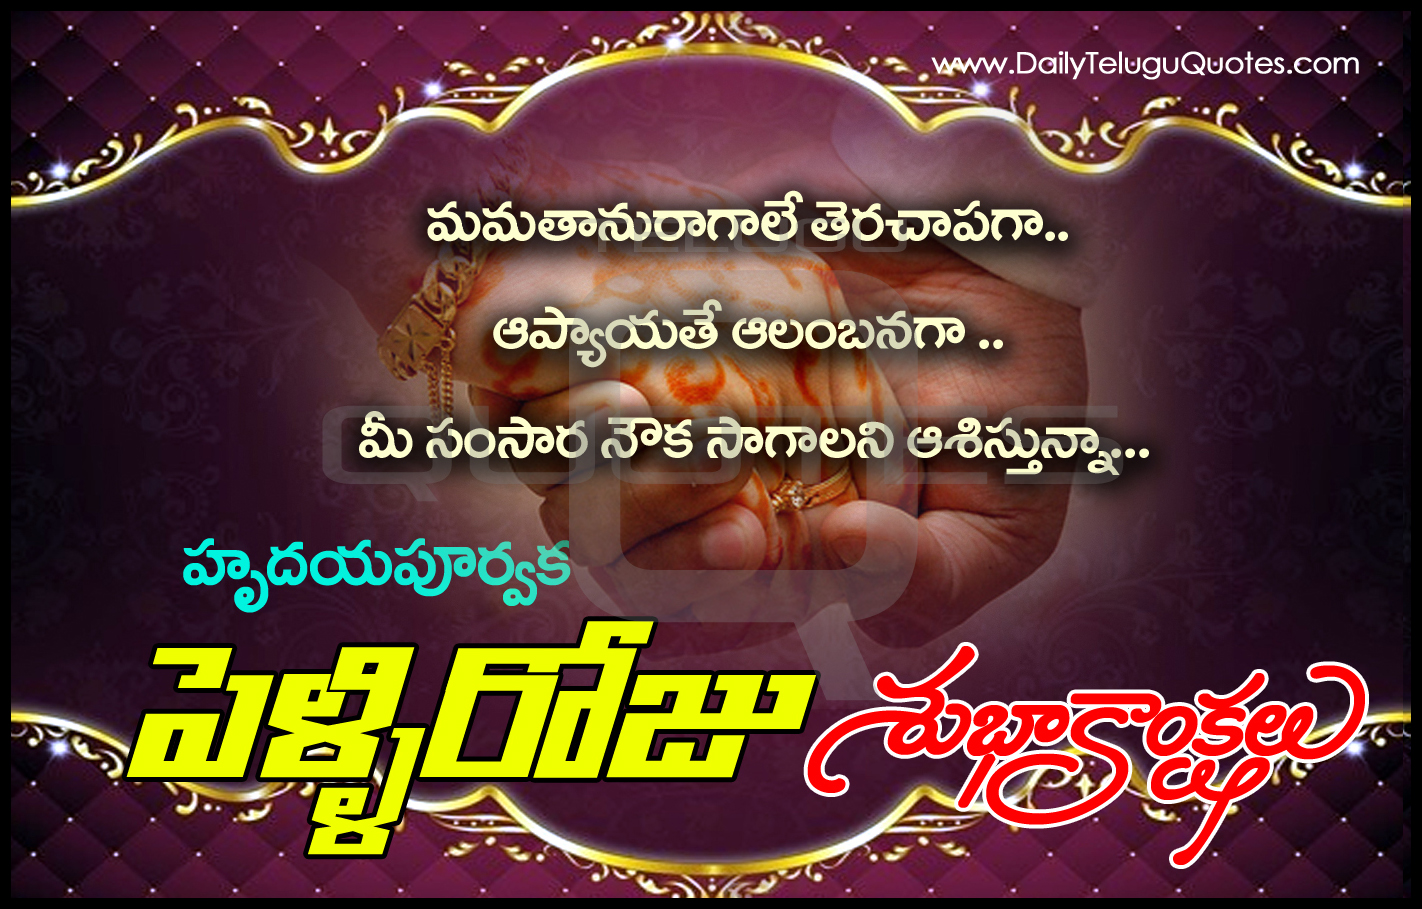 Telugu Happy Marriage Day Wishes Telugu quotes images